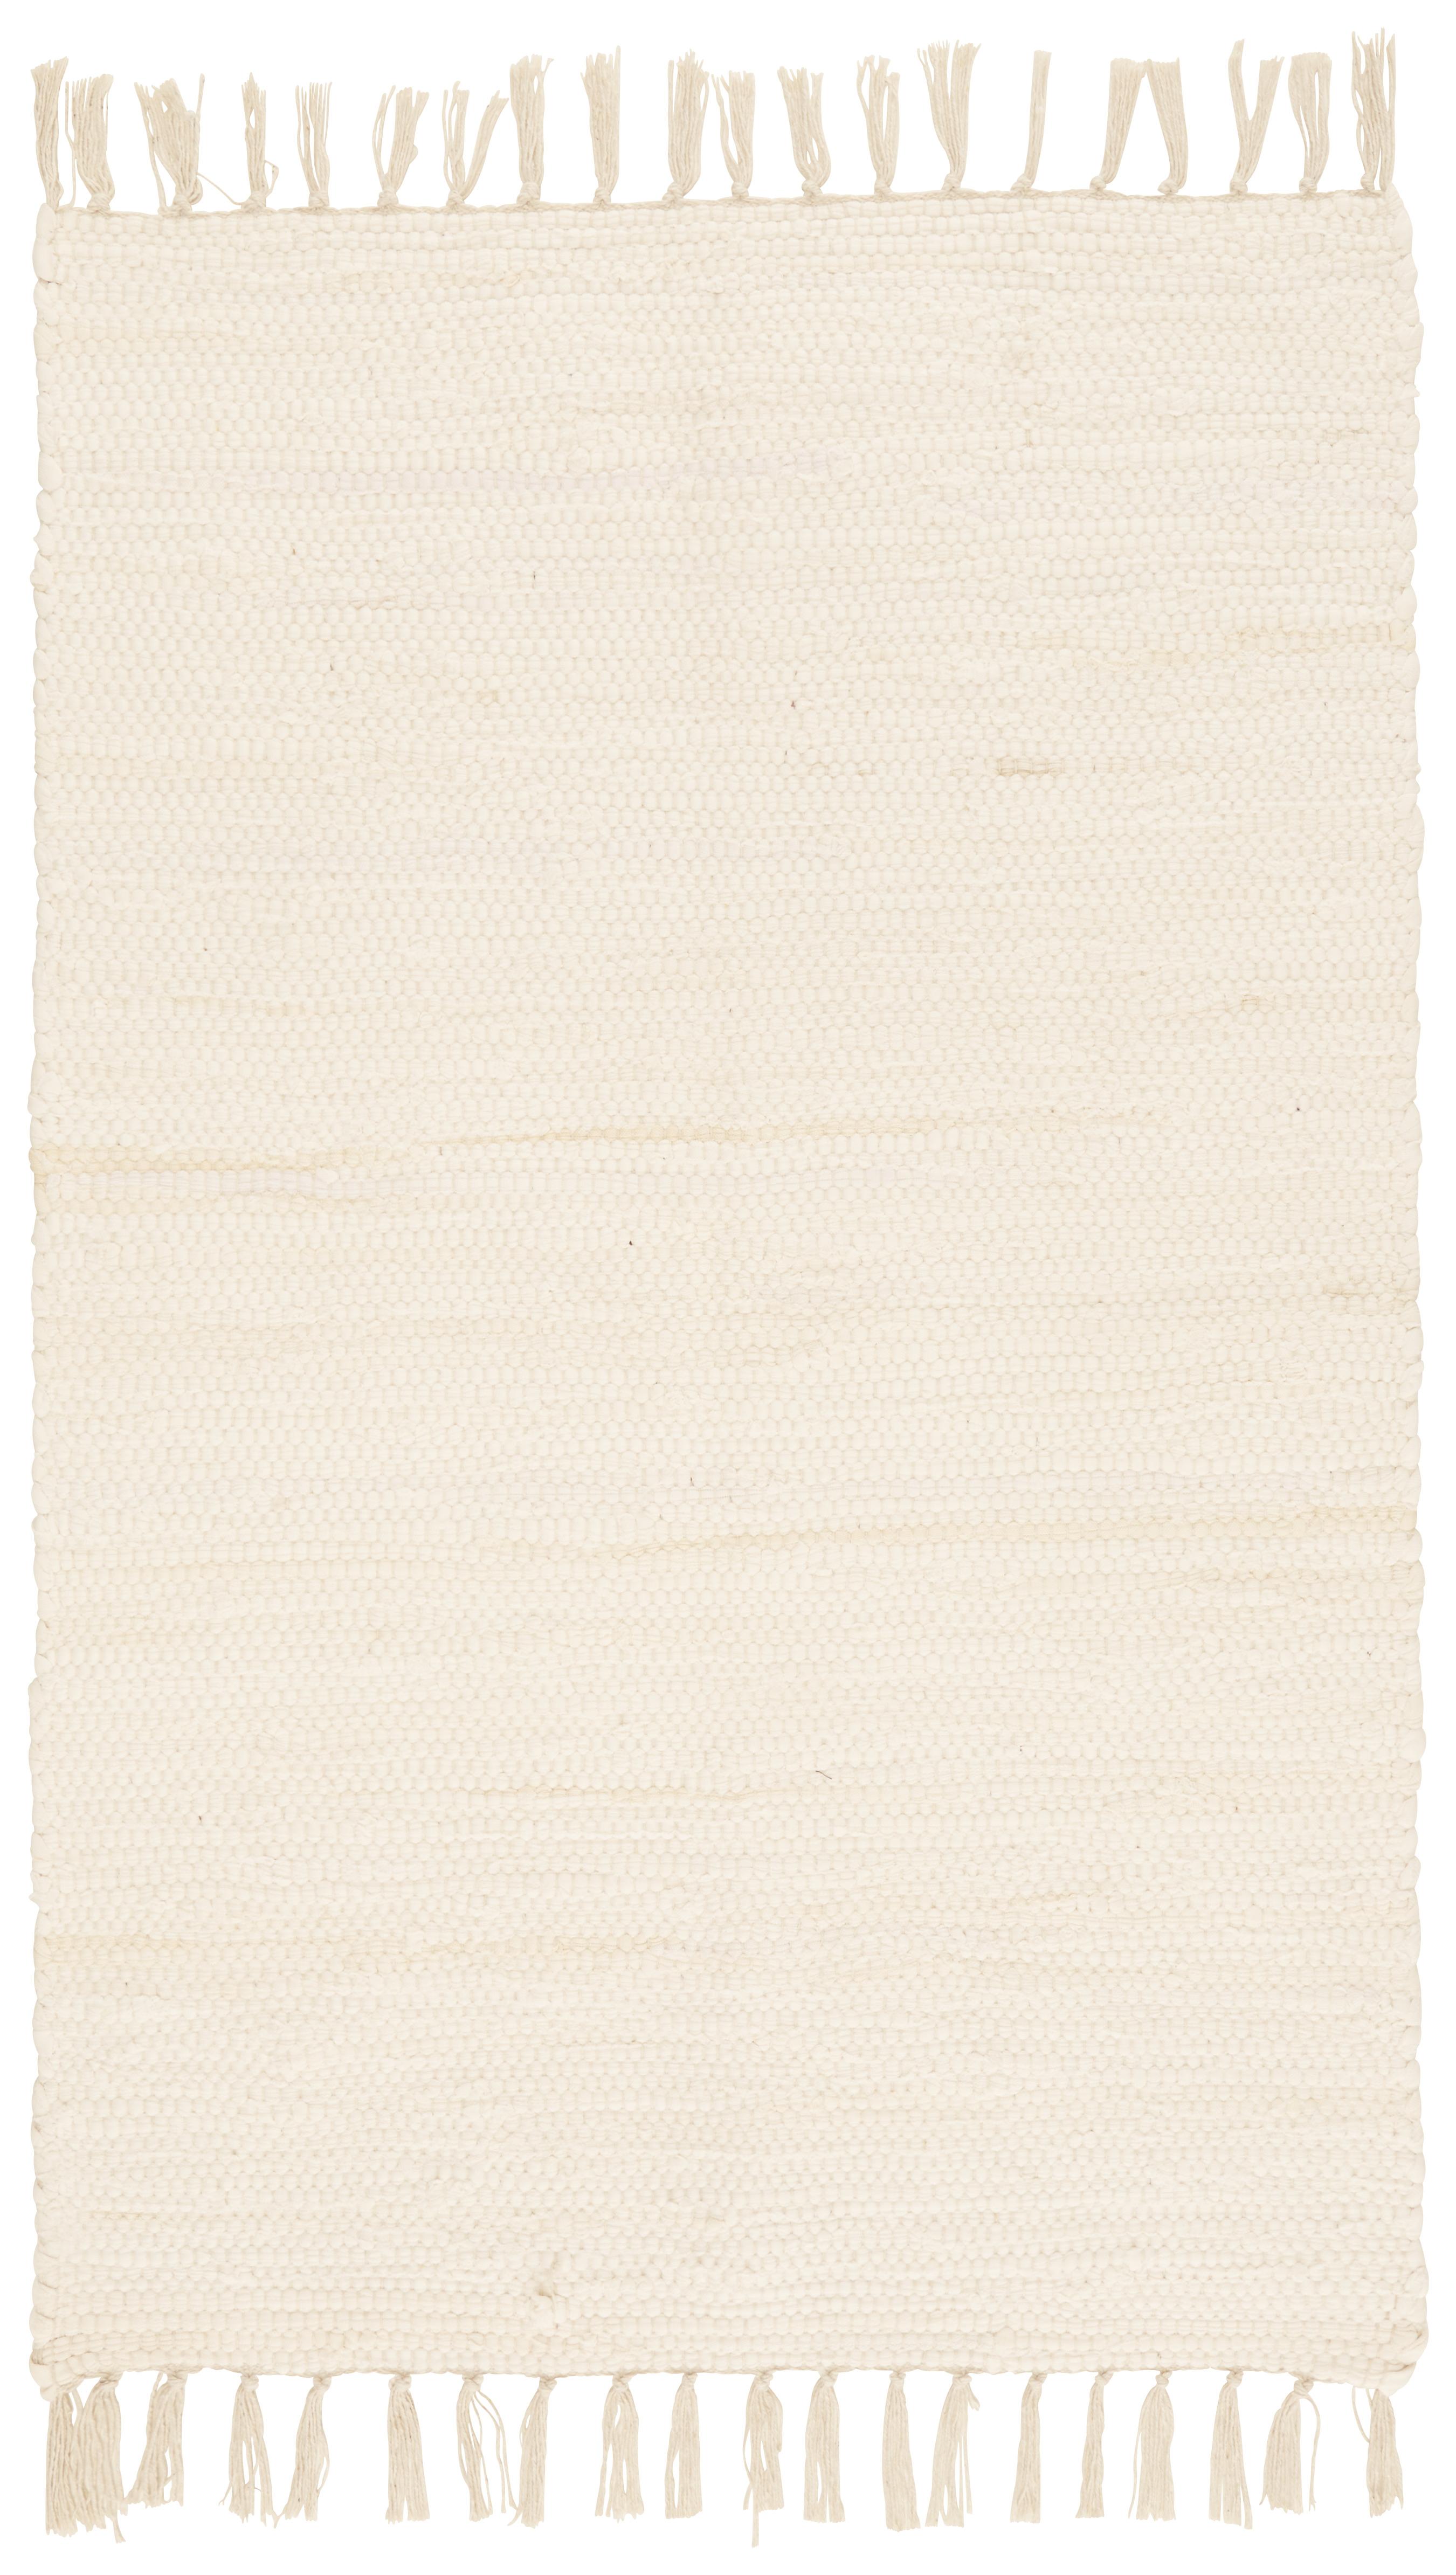 Tkaný Handričkový Koberec Julia 1, 60/90cm, Krémová - krémová, Konvenčný, textil (60/90cm) - Modern Living